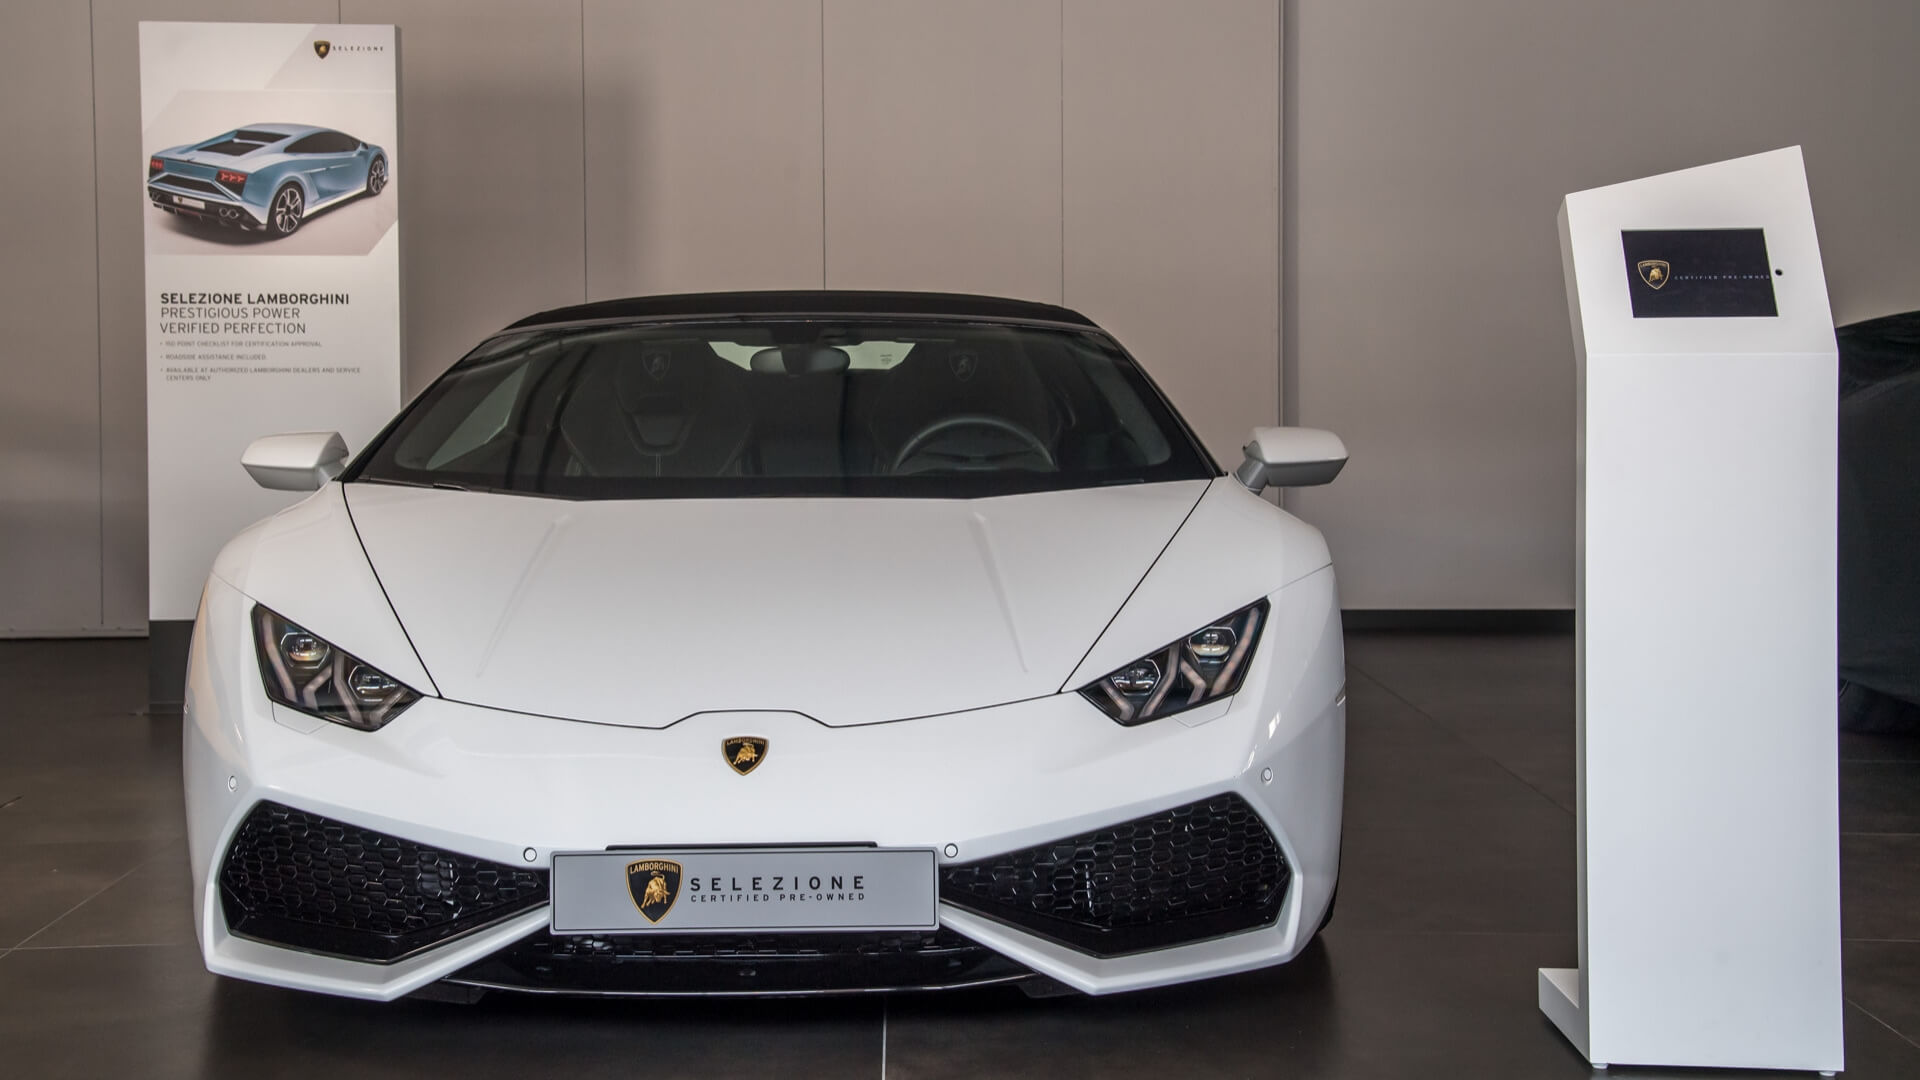 Selezione Lamborghini: Certified Pre-Owned Program